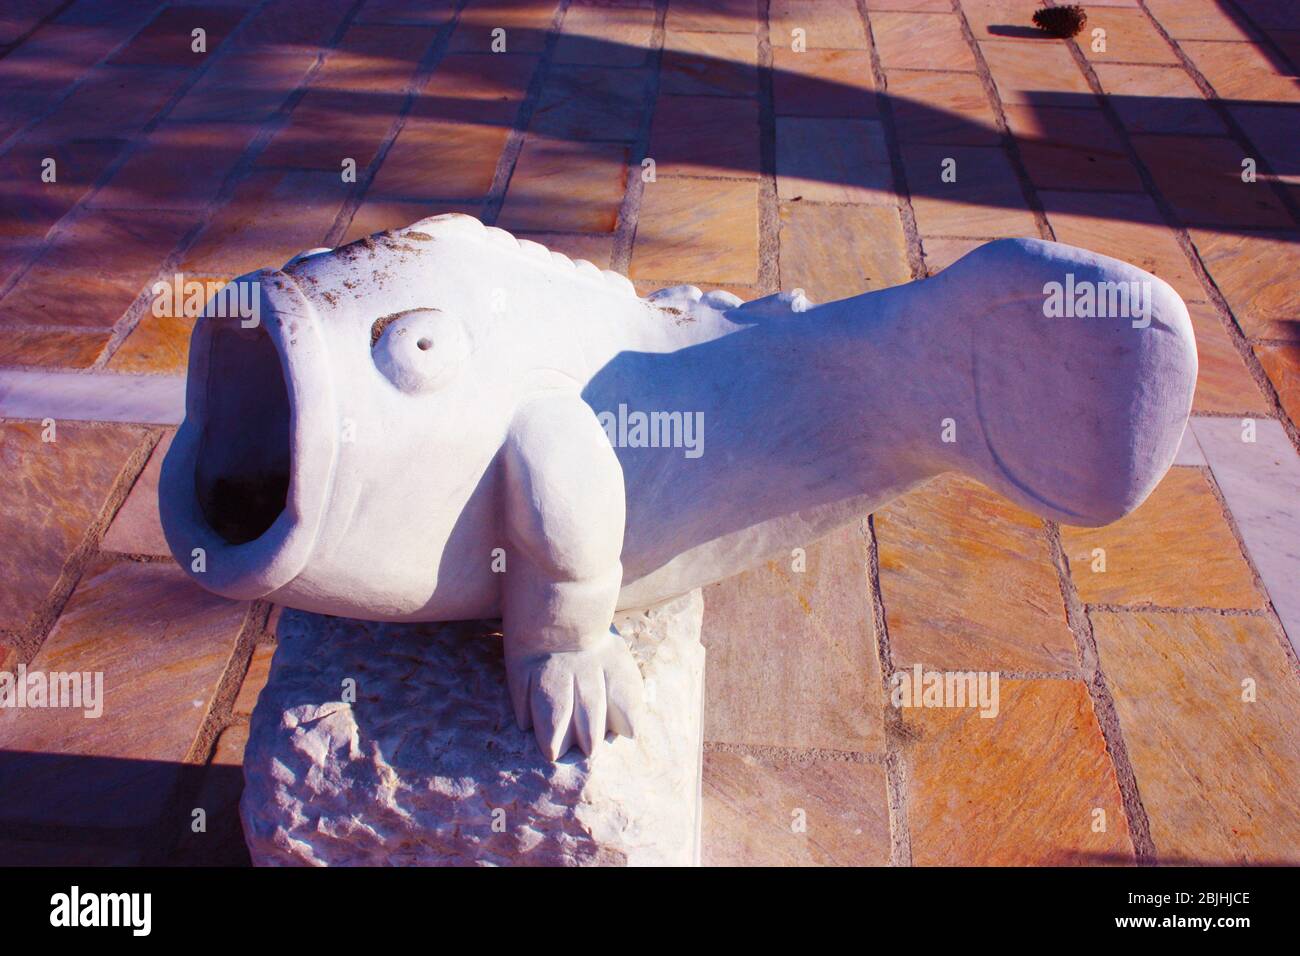 strana statua in marmo bianco raffigurante un pesce grasso con una grande bocca aperta in un giardino piastrellato in toscana Foto Stock